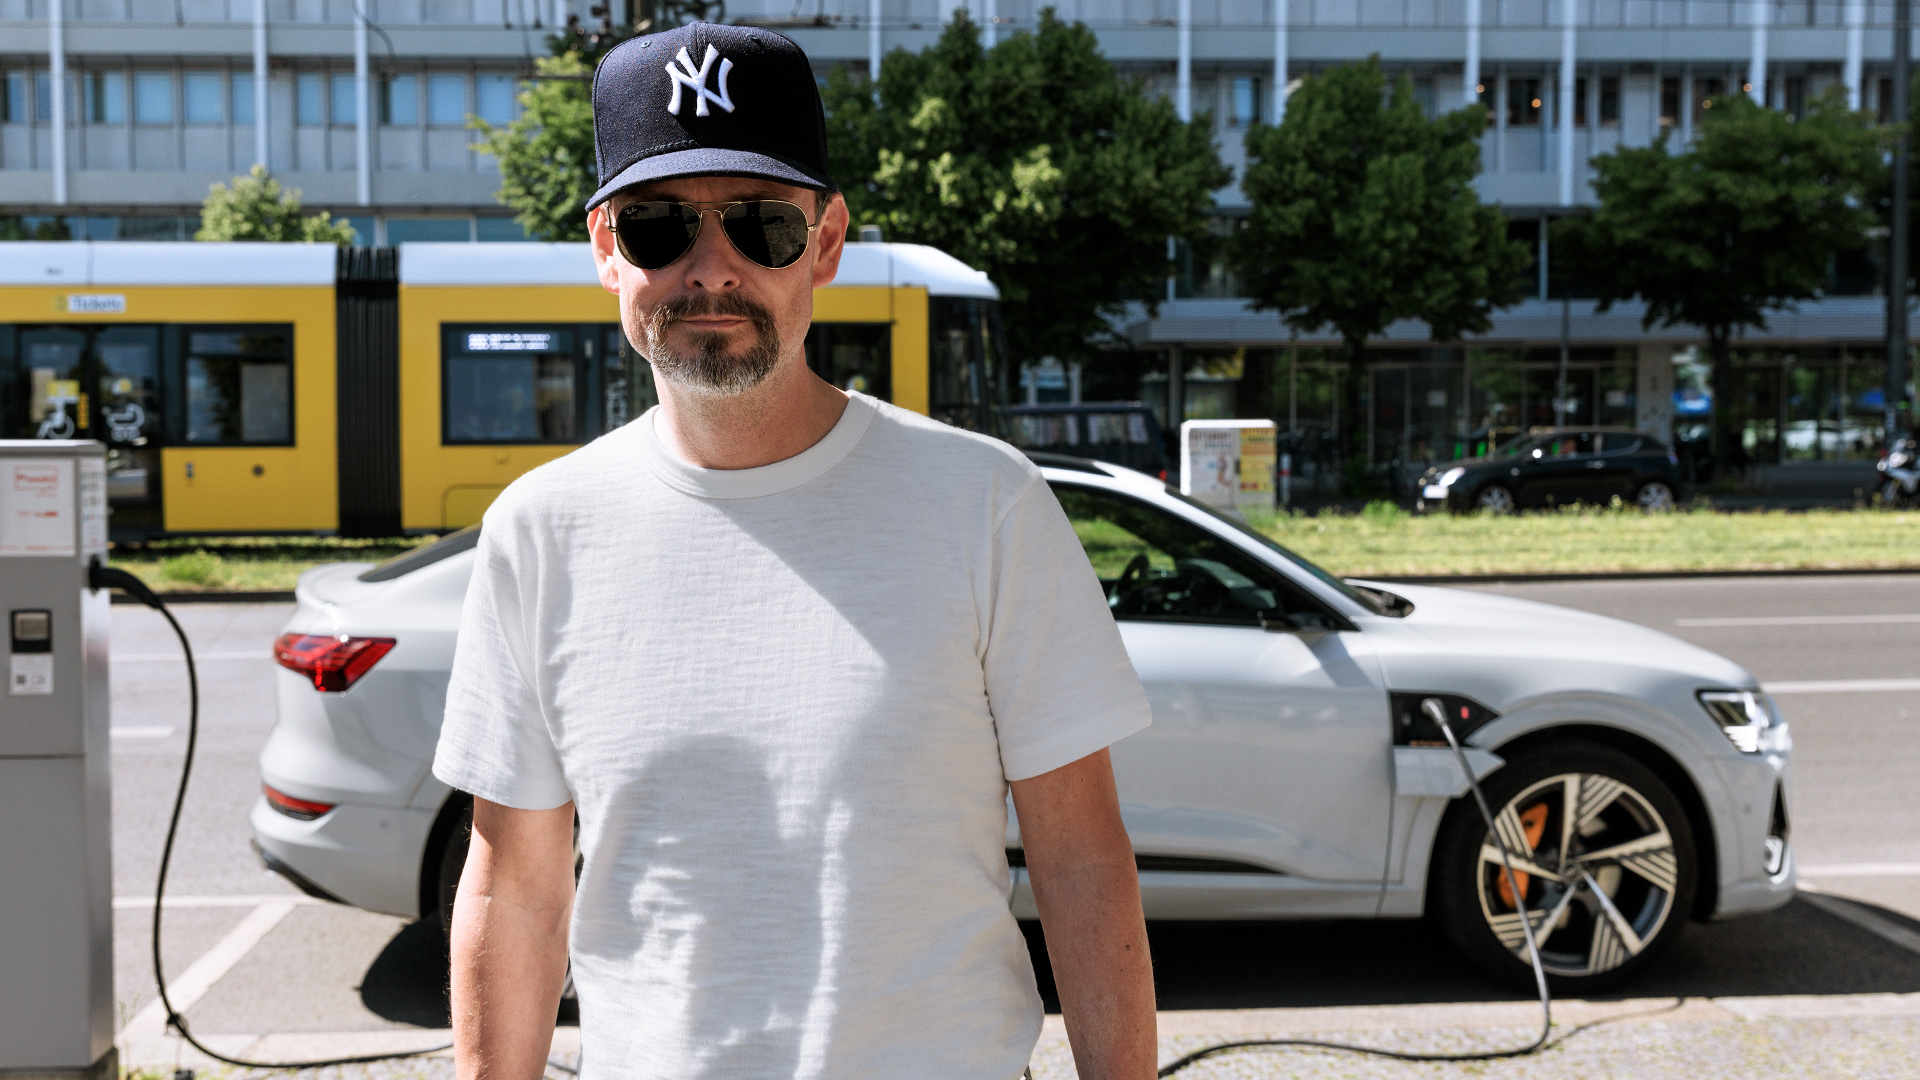 Marco Voigt voor zijn Audi e-tron Sportback die in Berlijn staat de laden bij een AC-lader.